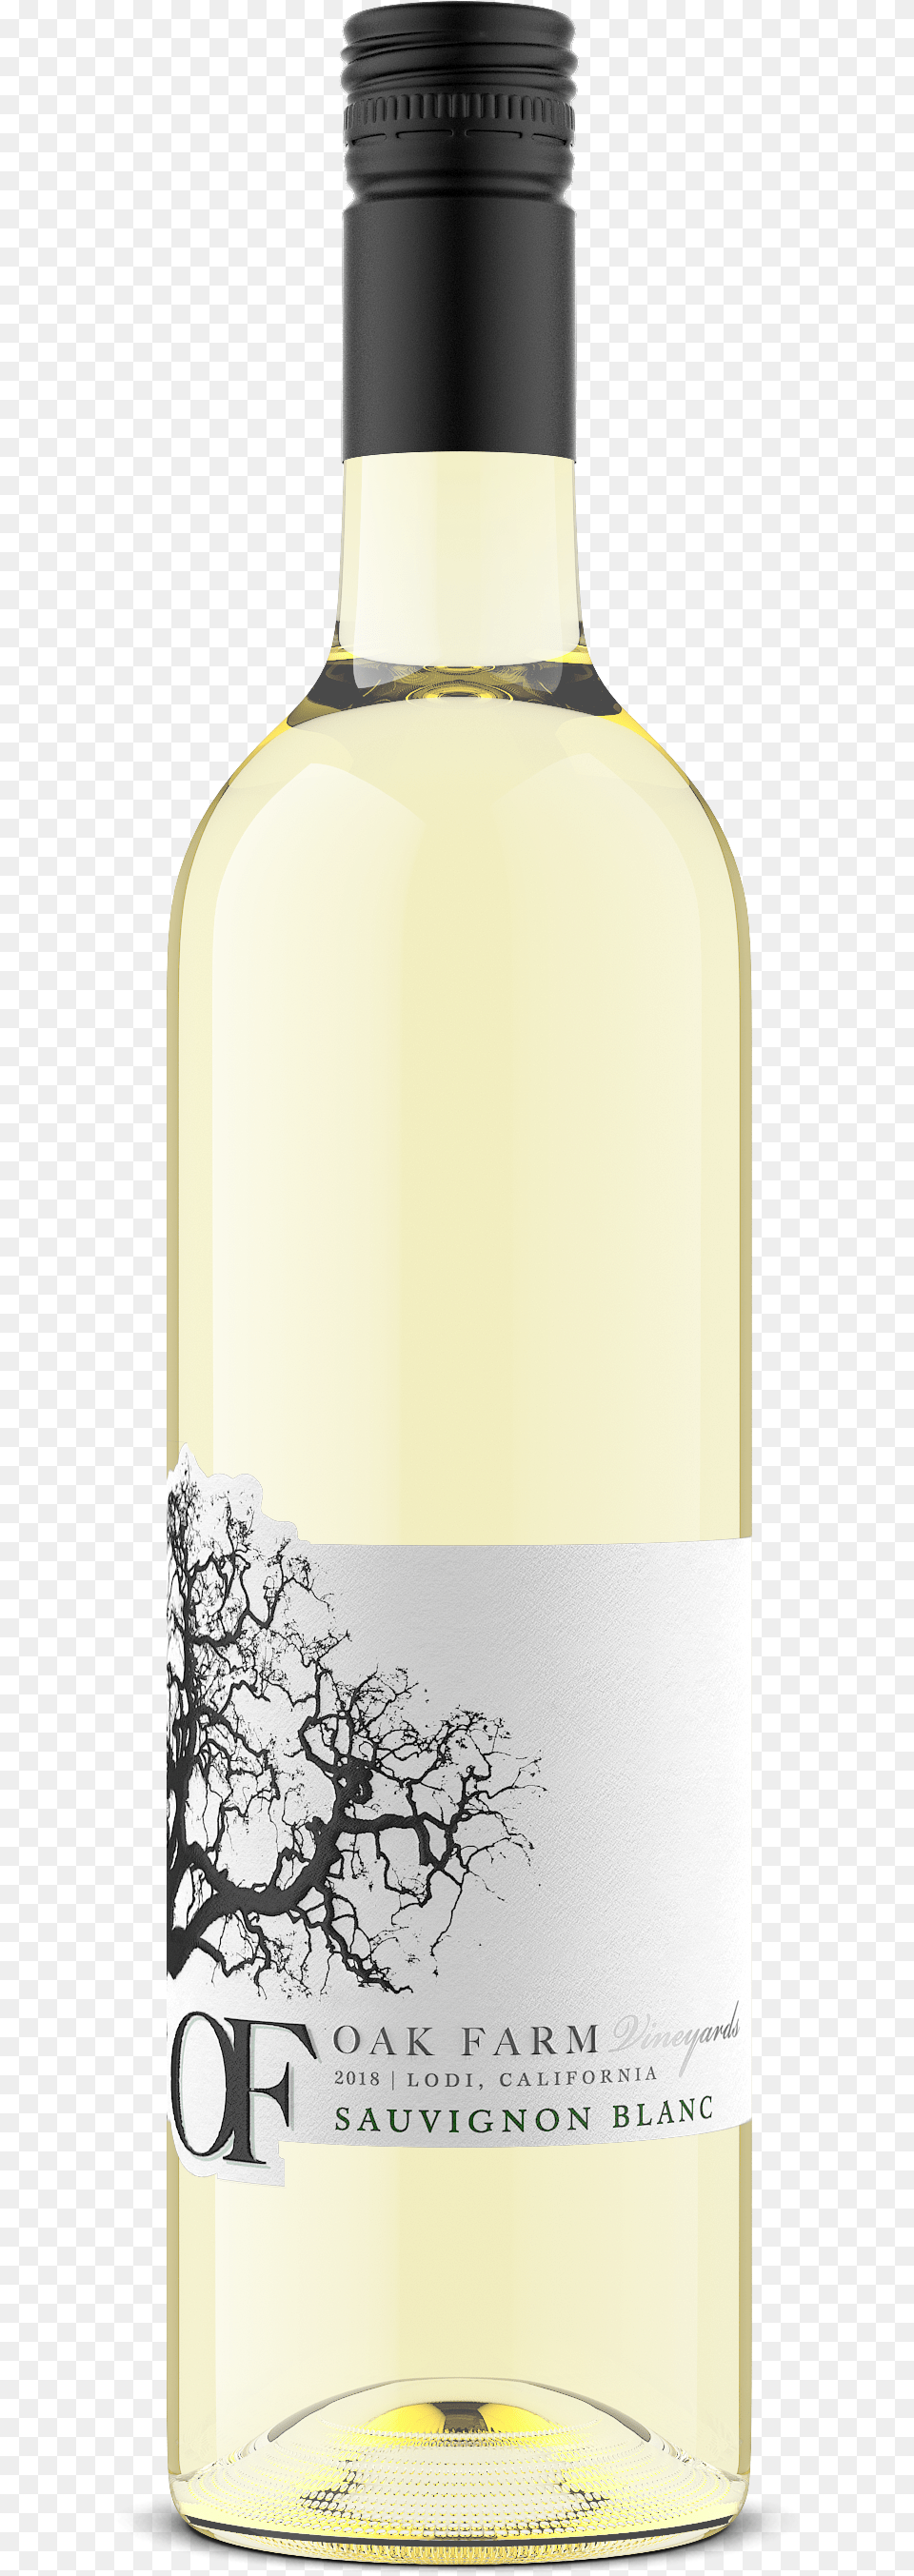 2018 Bottle Image Water Bottle, Alcohol, Beverage, Liquor, Wine Free Transparent Png